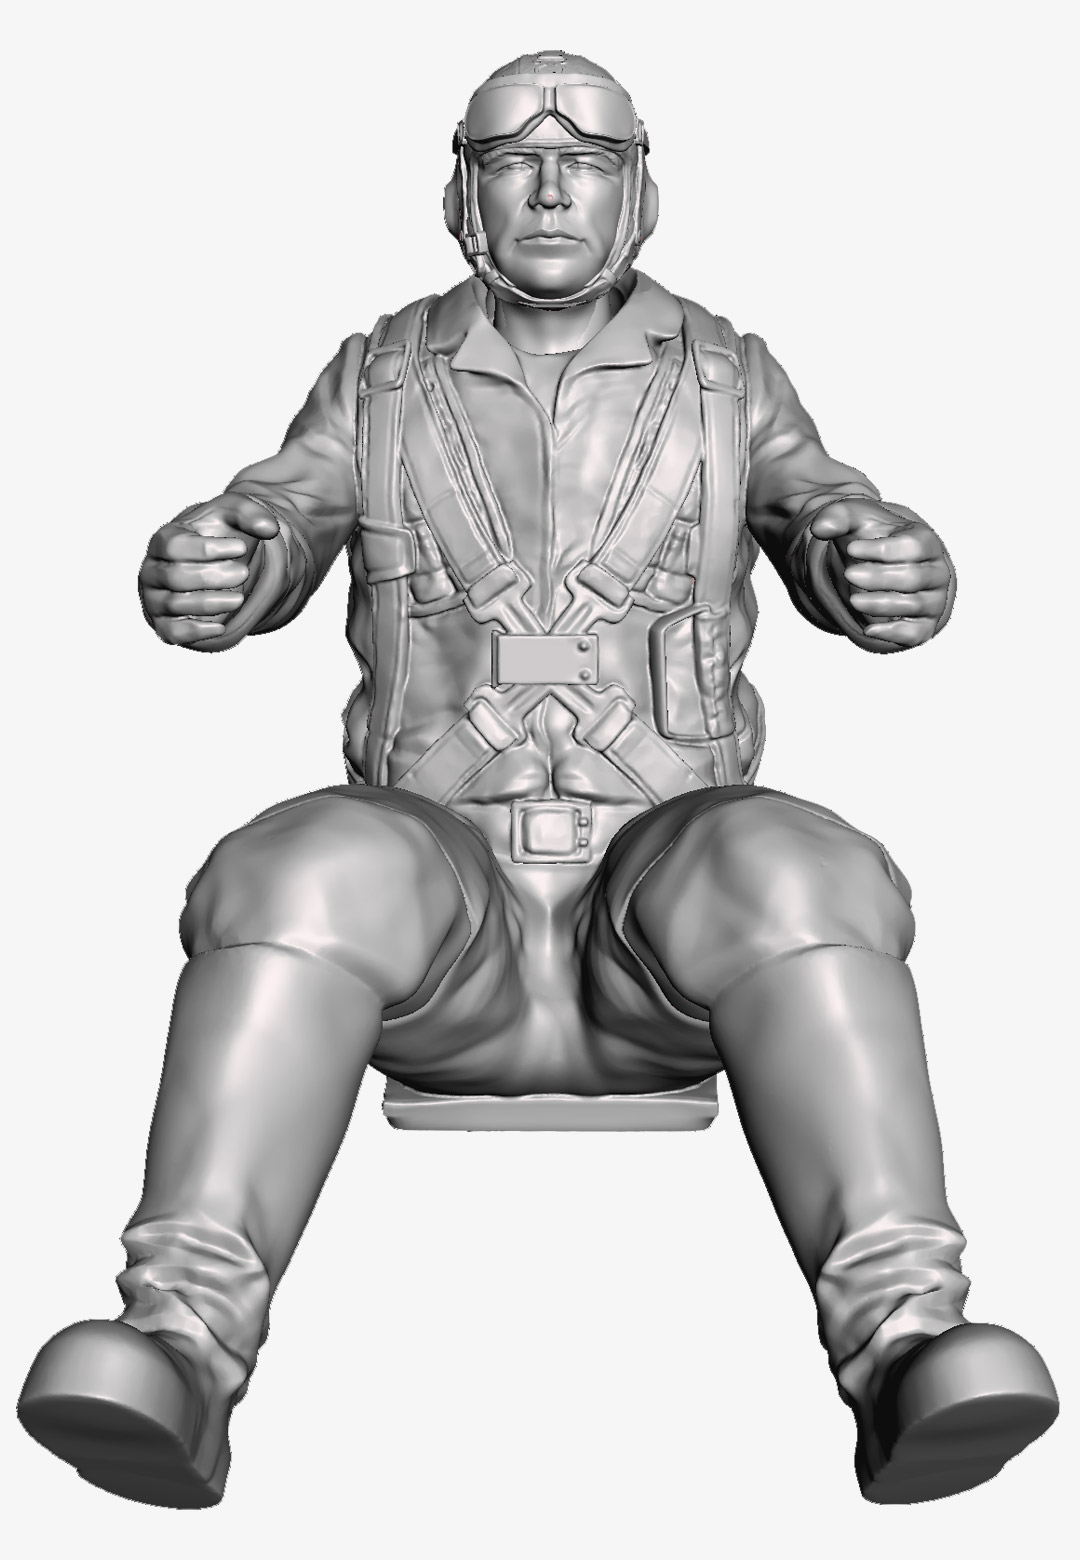 bastlero - Yevgeny Pepelyayev 3D printable figure